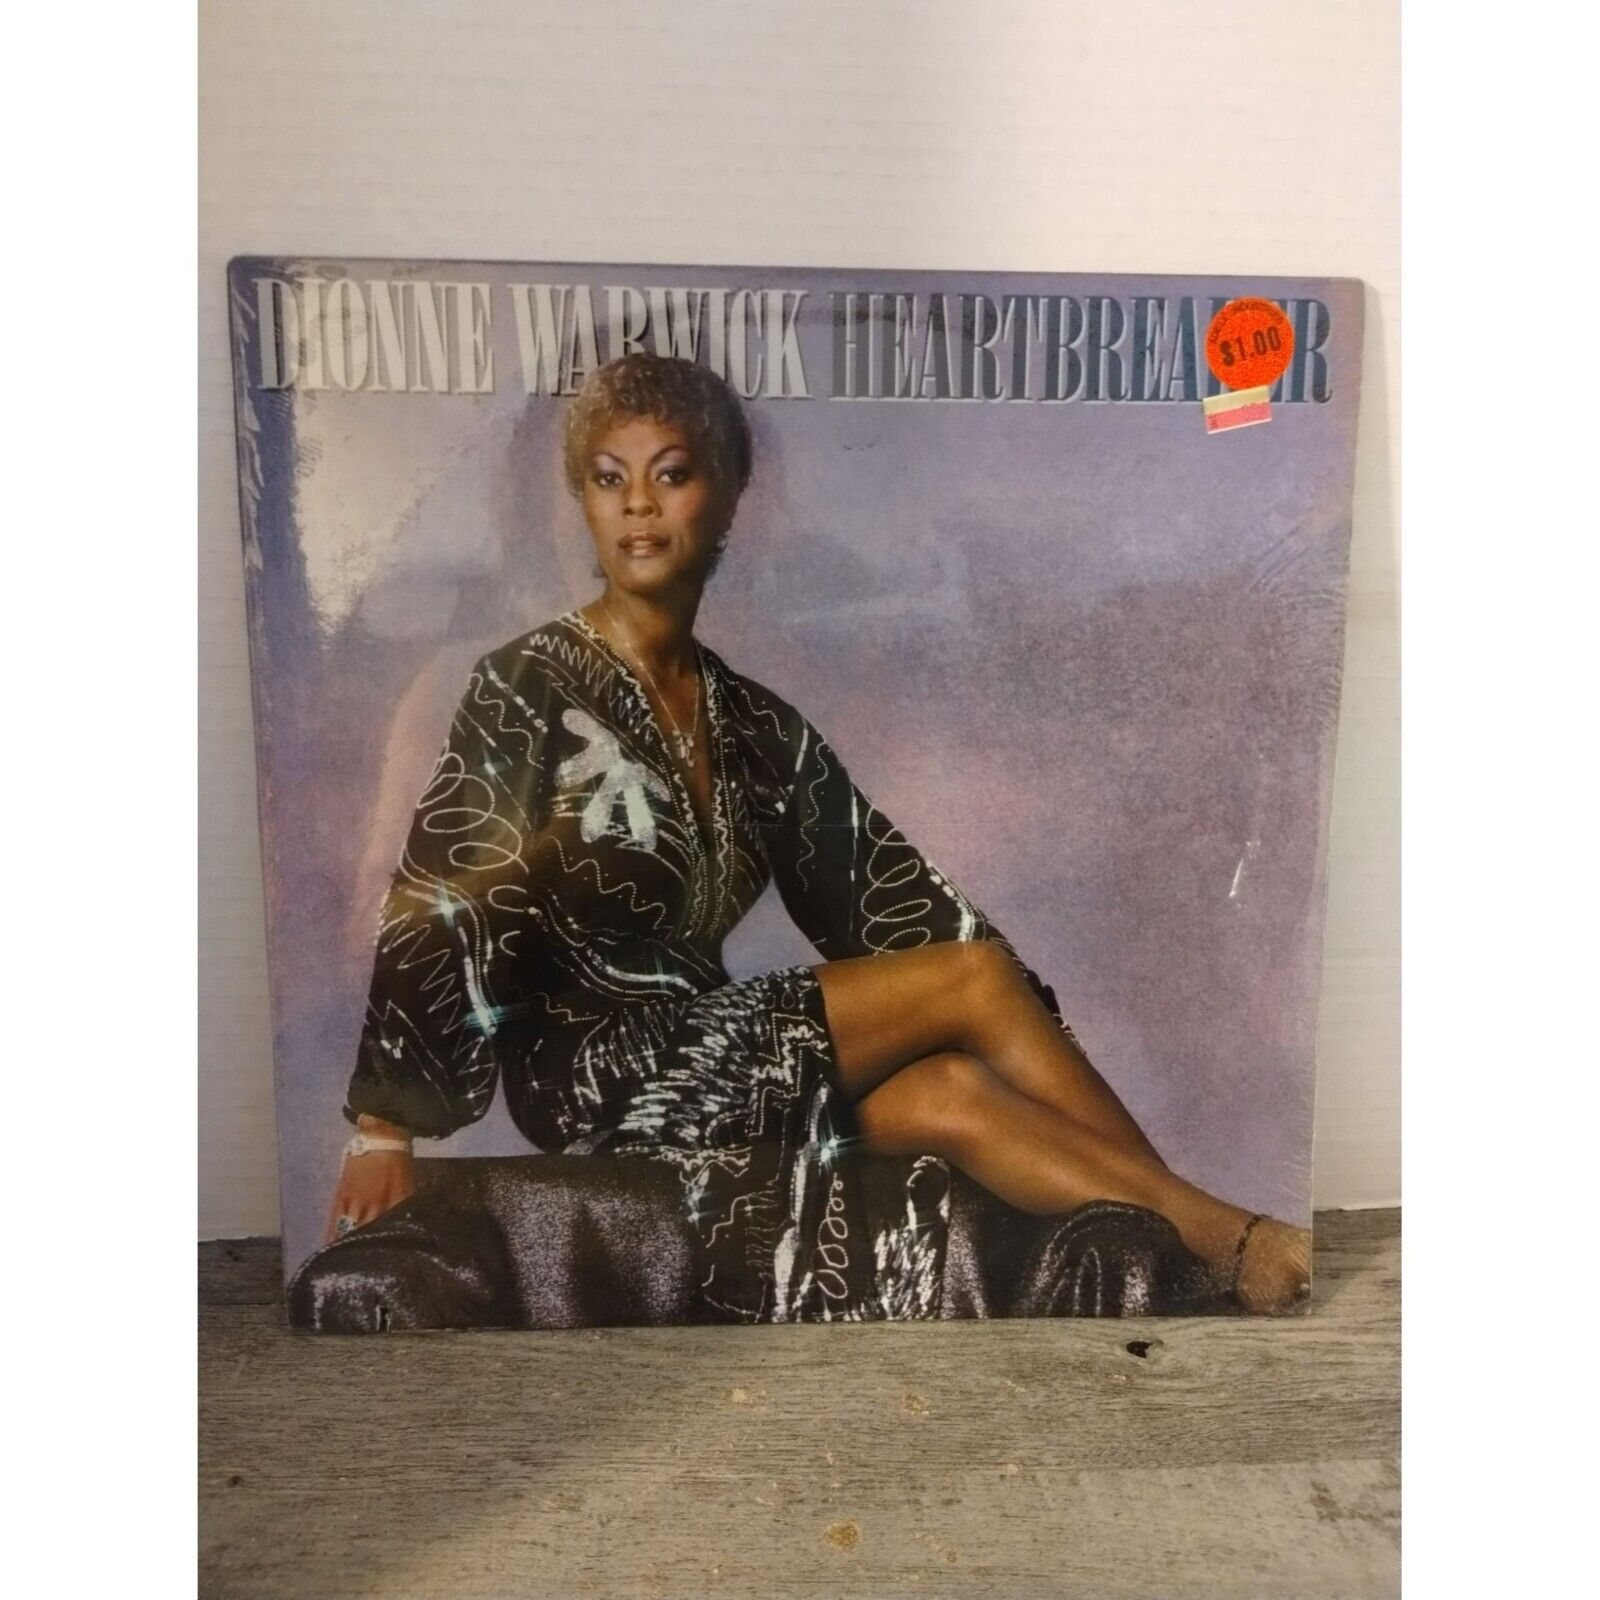 Dionne Warwick - Heartbreaker LP SEALED 1982 Arista Rec